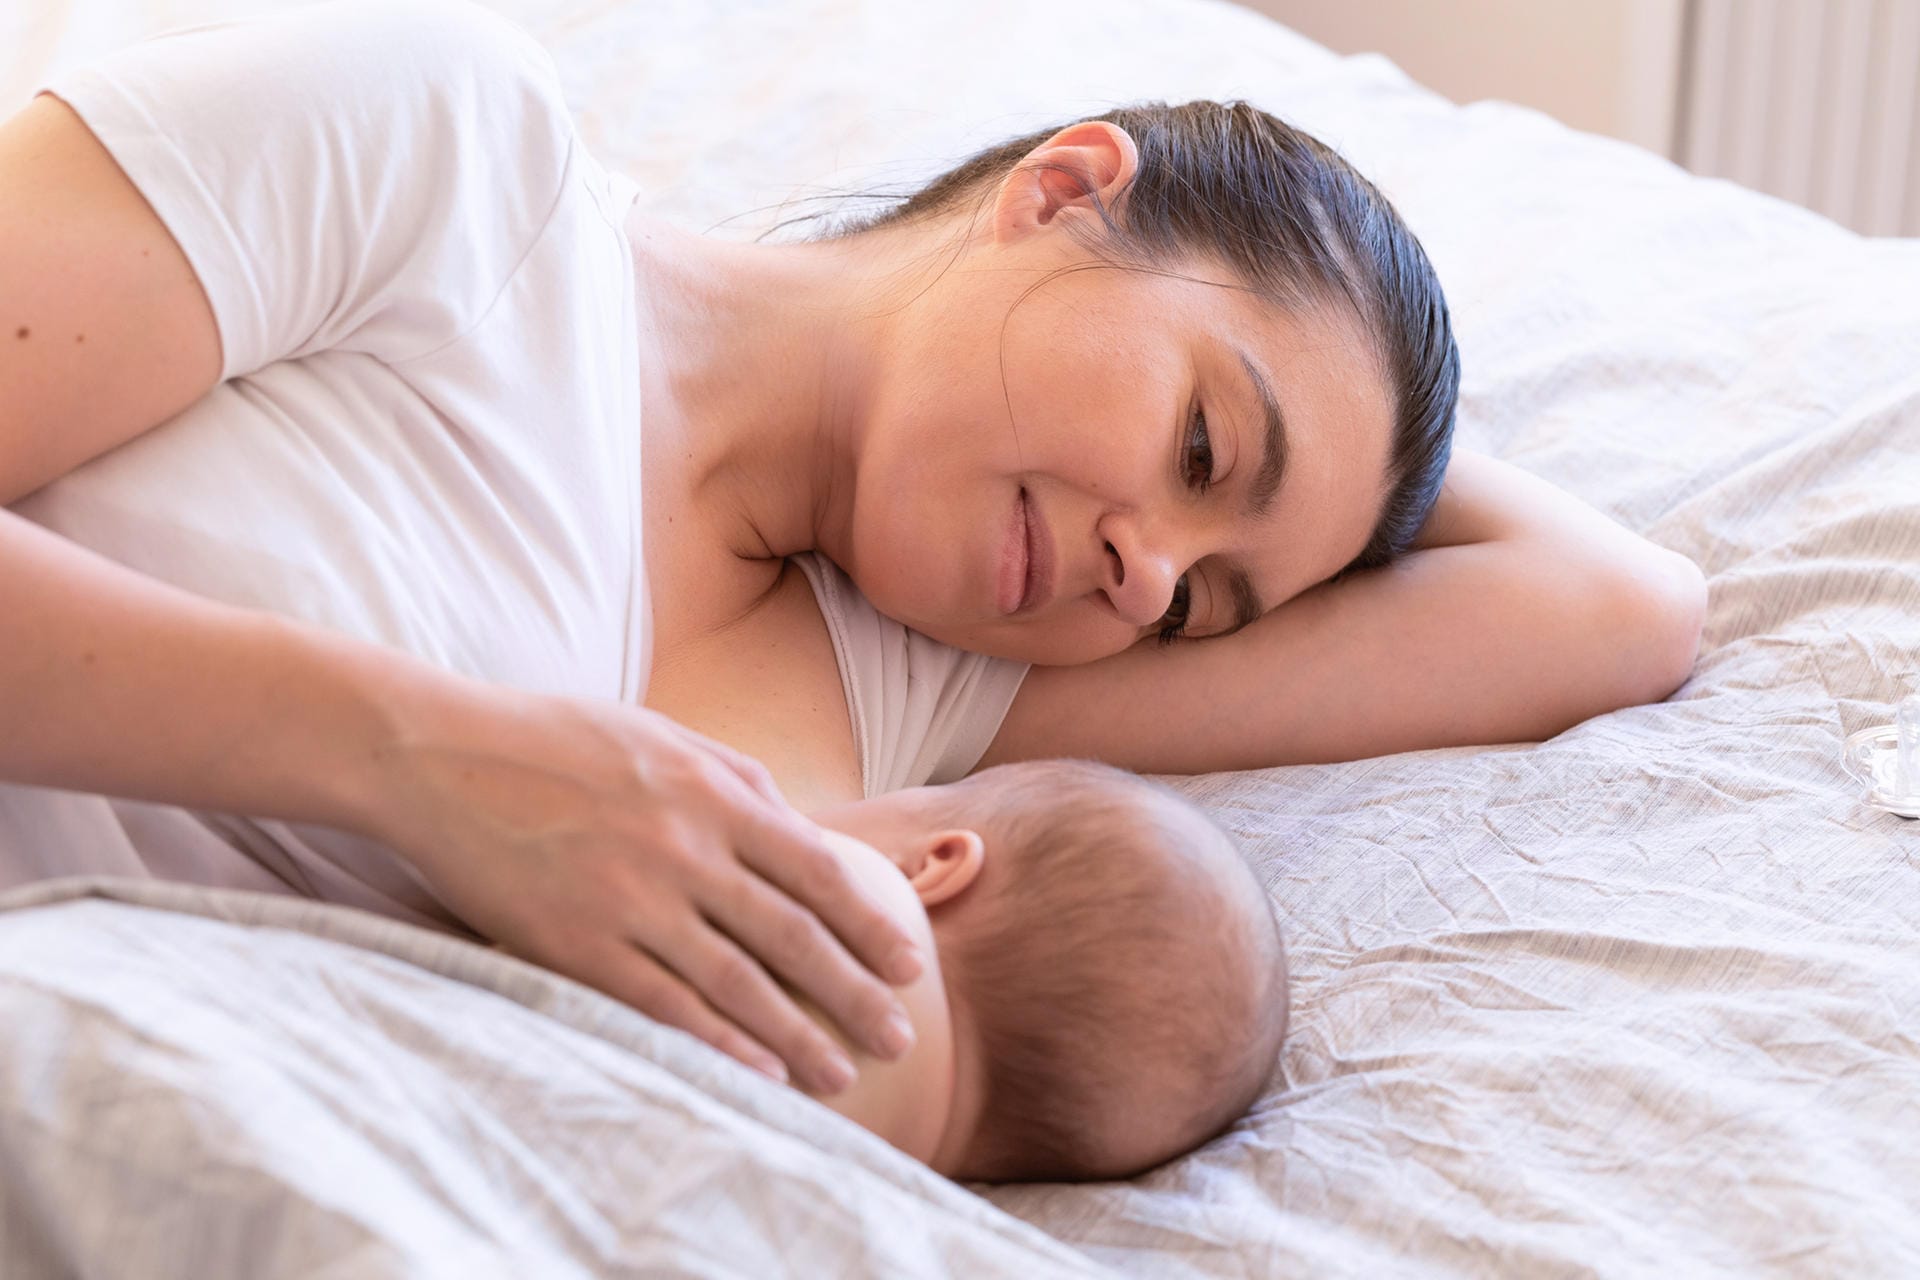 Stillen: In den ersten vier Monaten brauchen Babys nur Muttermilch oder Muttermilchersatz. Diese enthält die wichtigsten Nahrungsstoffe, die für die Säuglinge notwendig sind.